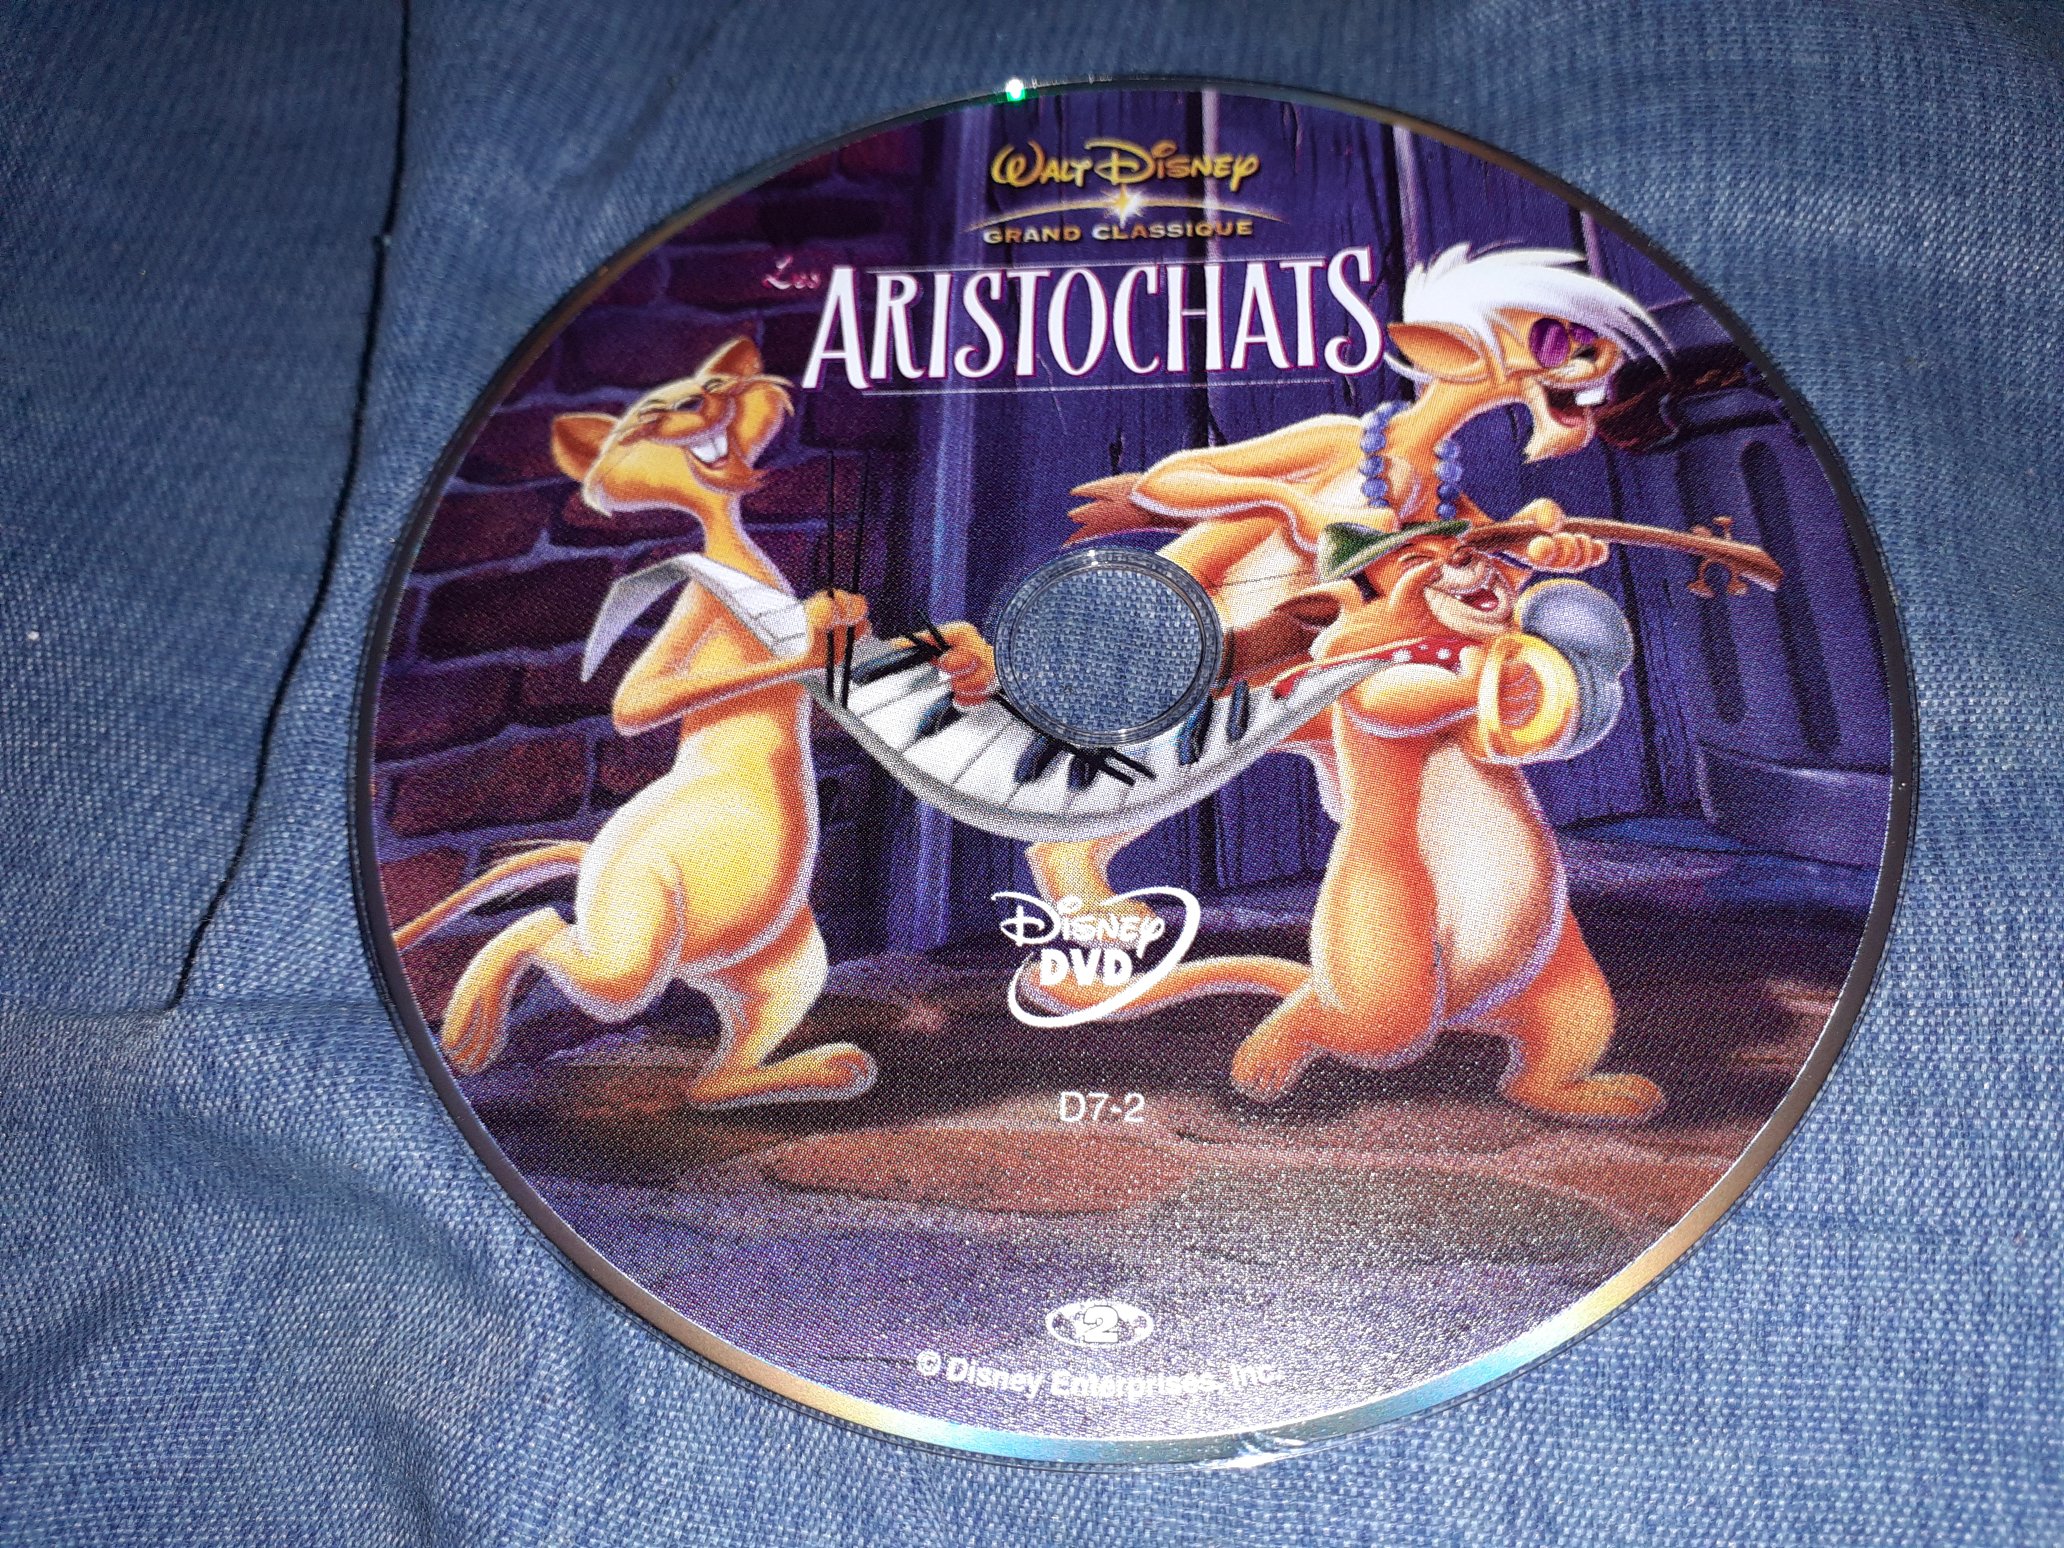 Les Aristochats sur Disney + : résumé de l'épisode